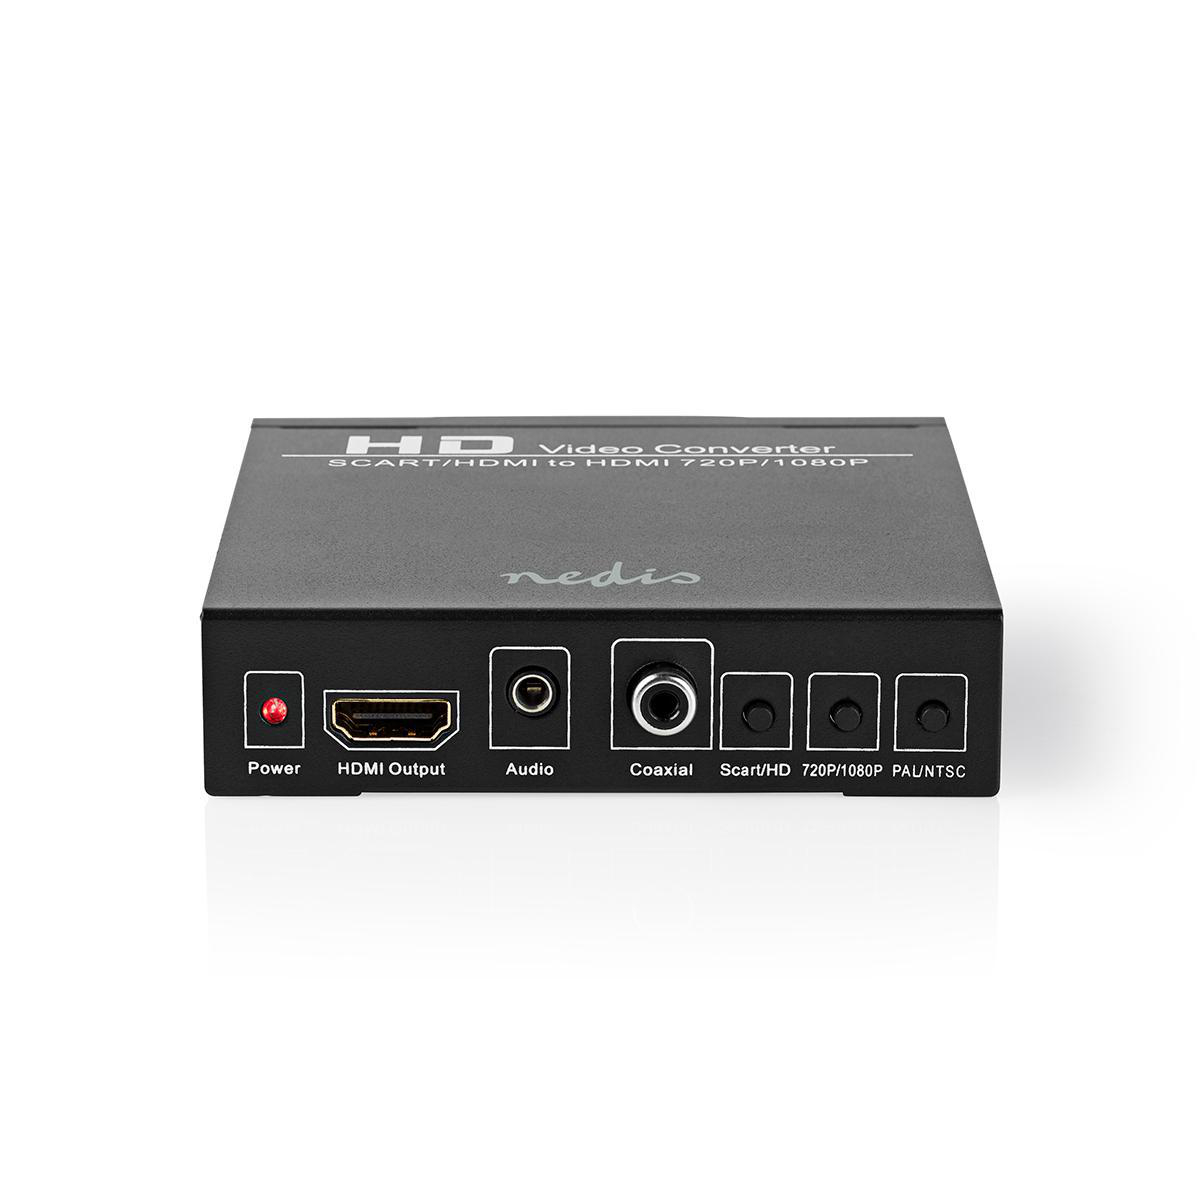 HDMI VCON3452AT NEDIS Converter